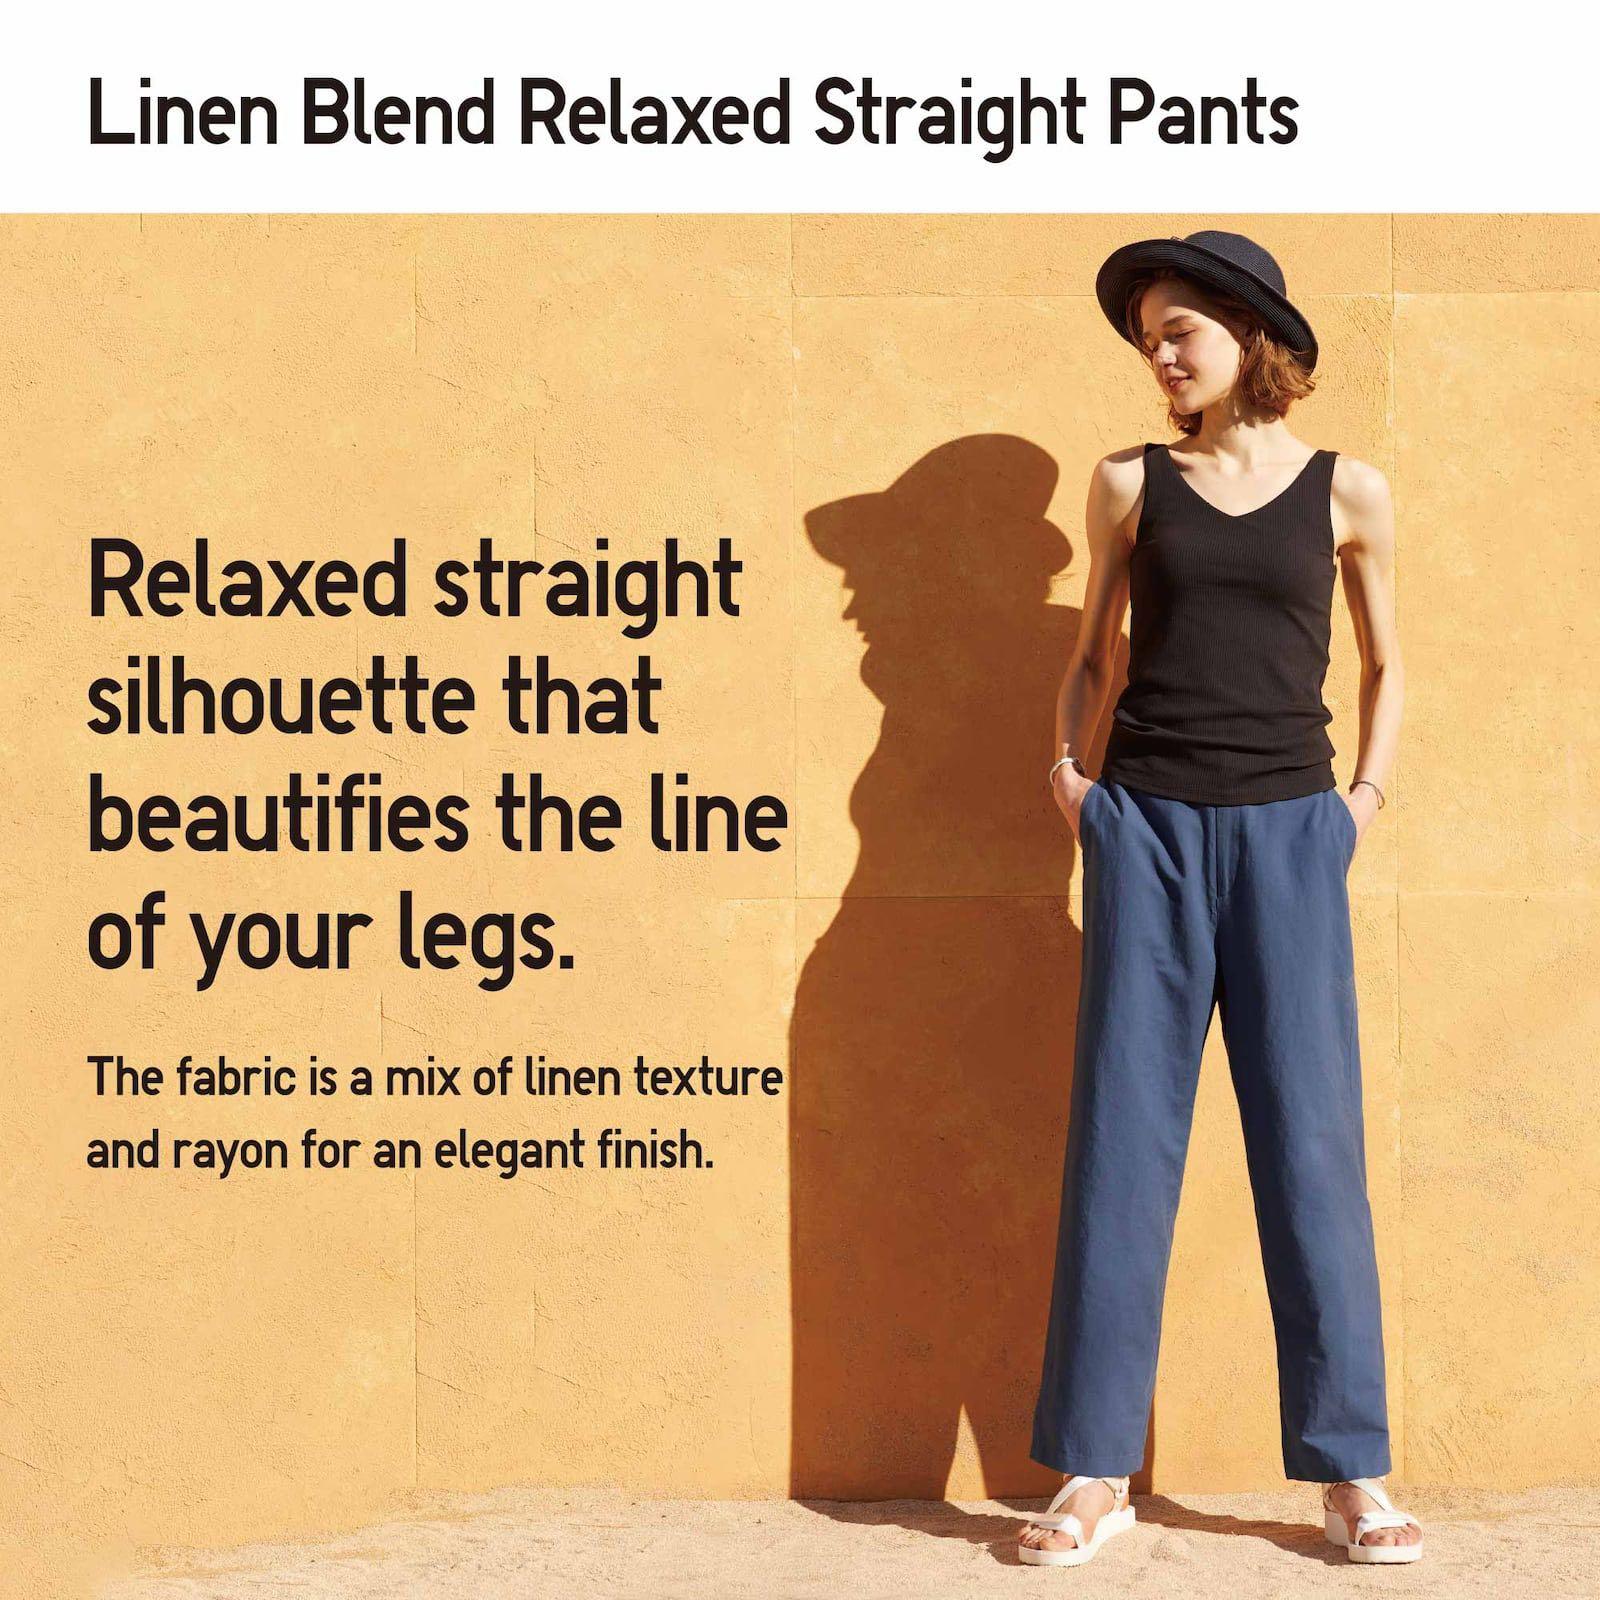 WOMEN'S LINEN BLEND RELAXED STRAIGHT PANTS